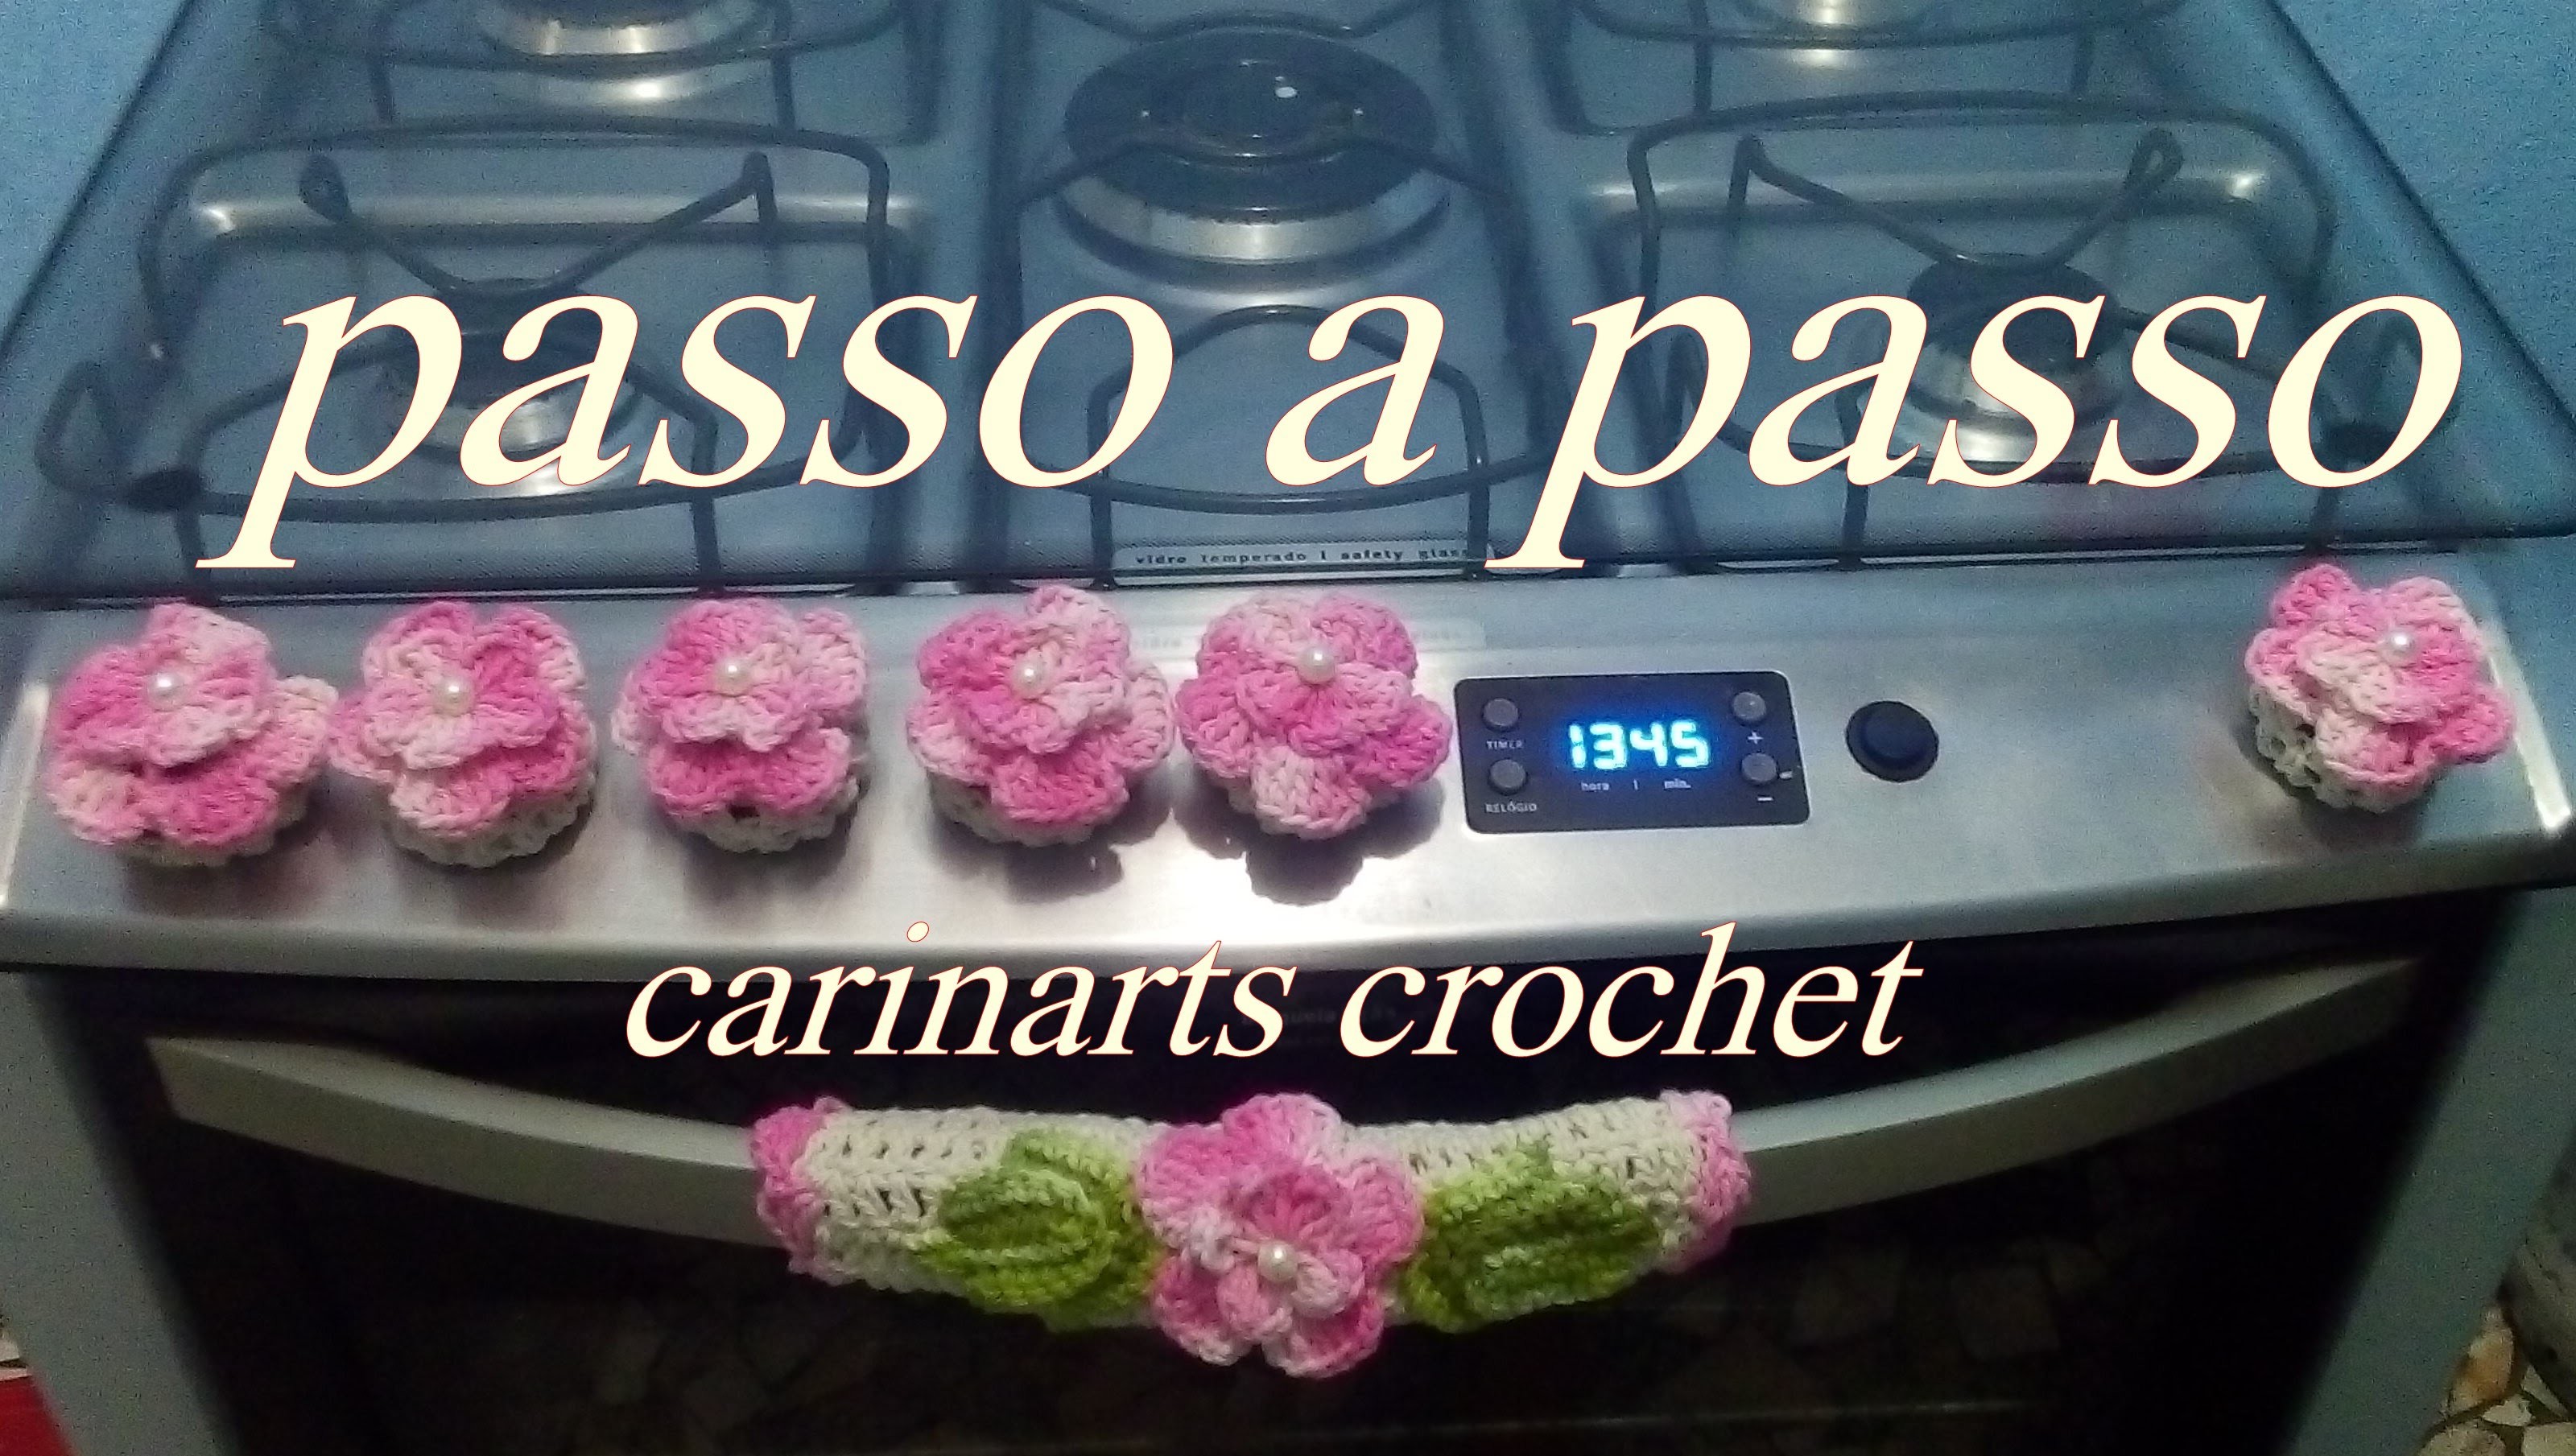 Capinha para botão do fogão em crochê by Carina Dias